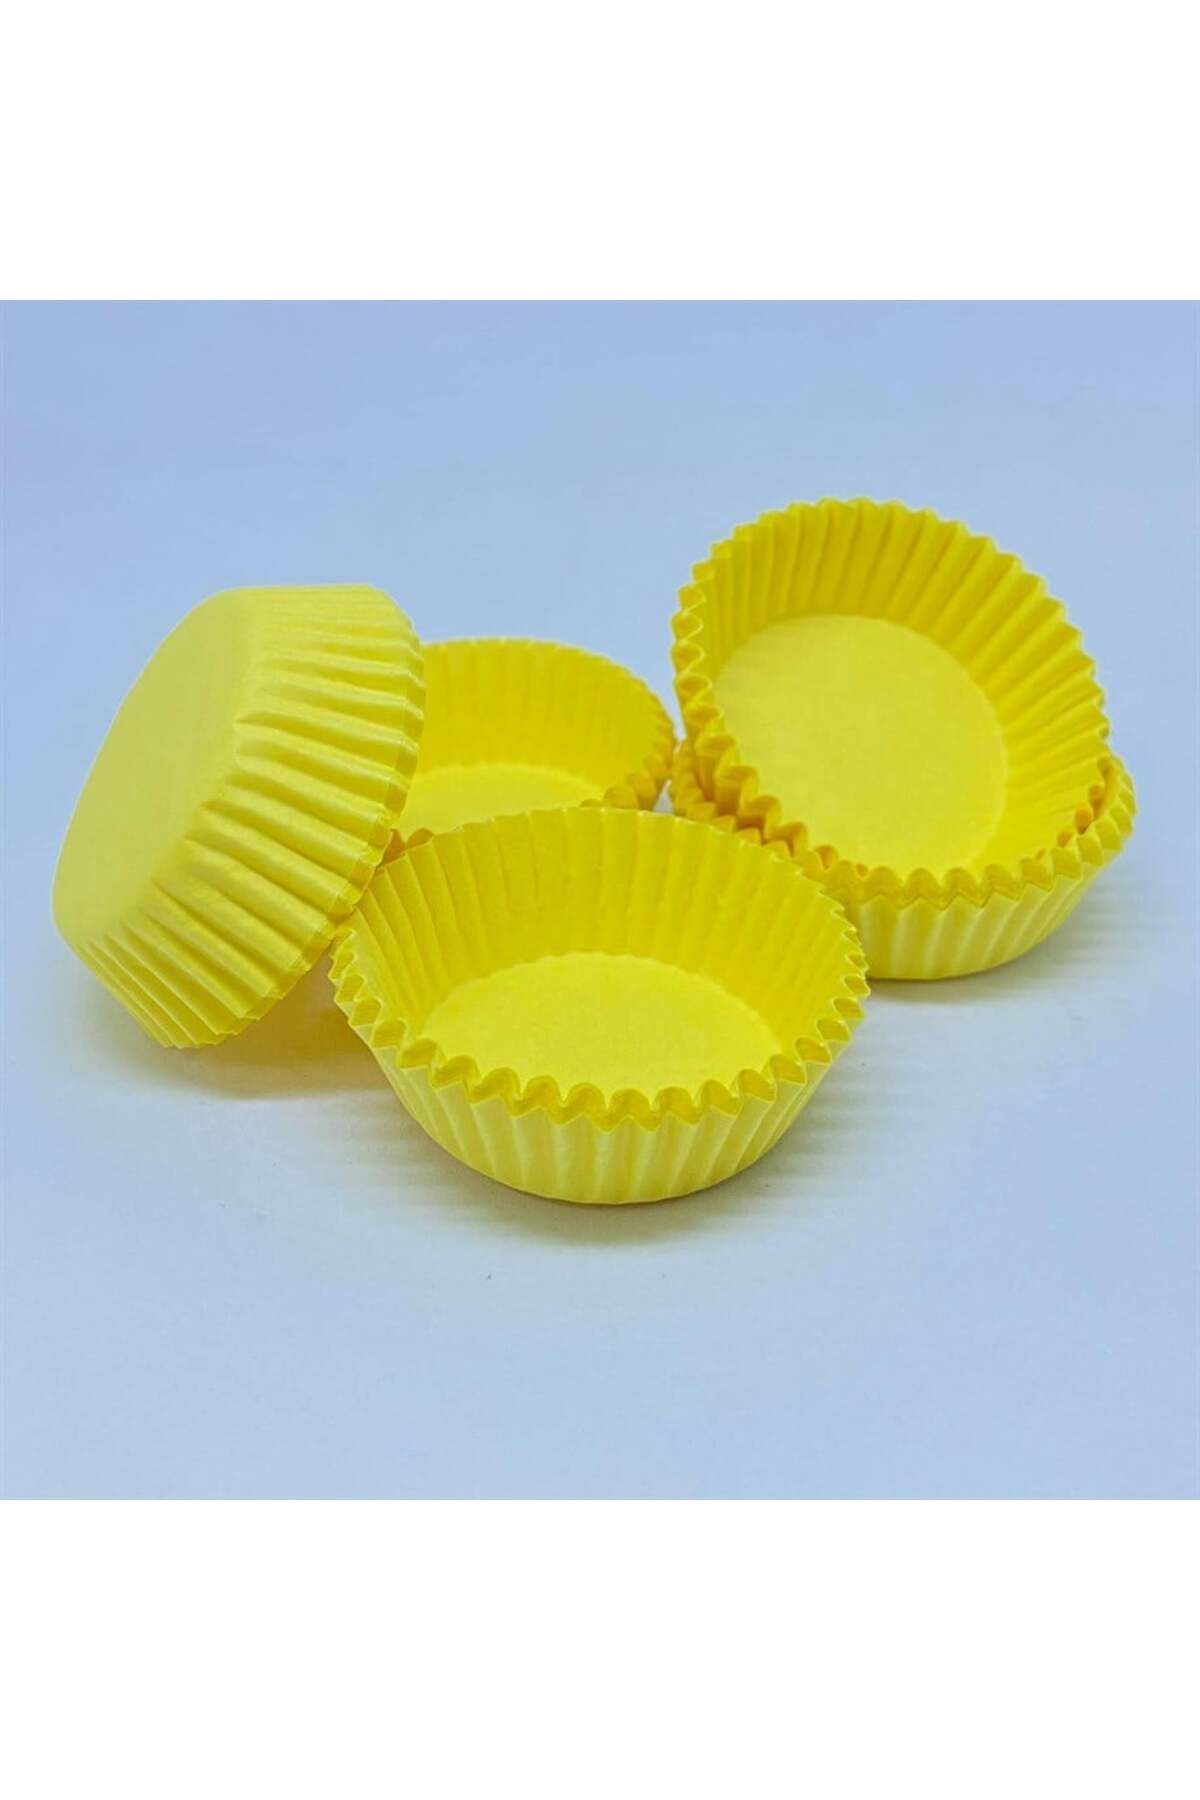 Adana Pasta Malzemeleri Kapsül No:0 Sarı 100 Adet 32x12 Mm